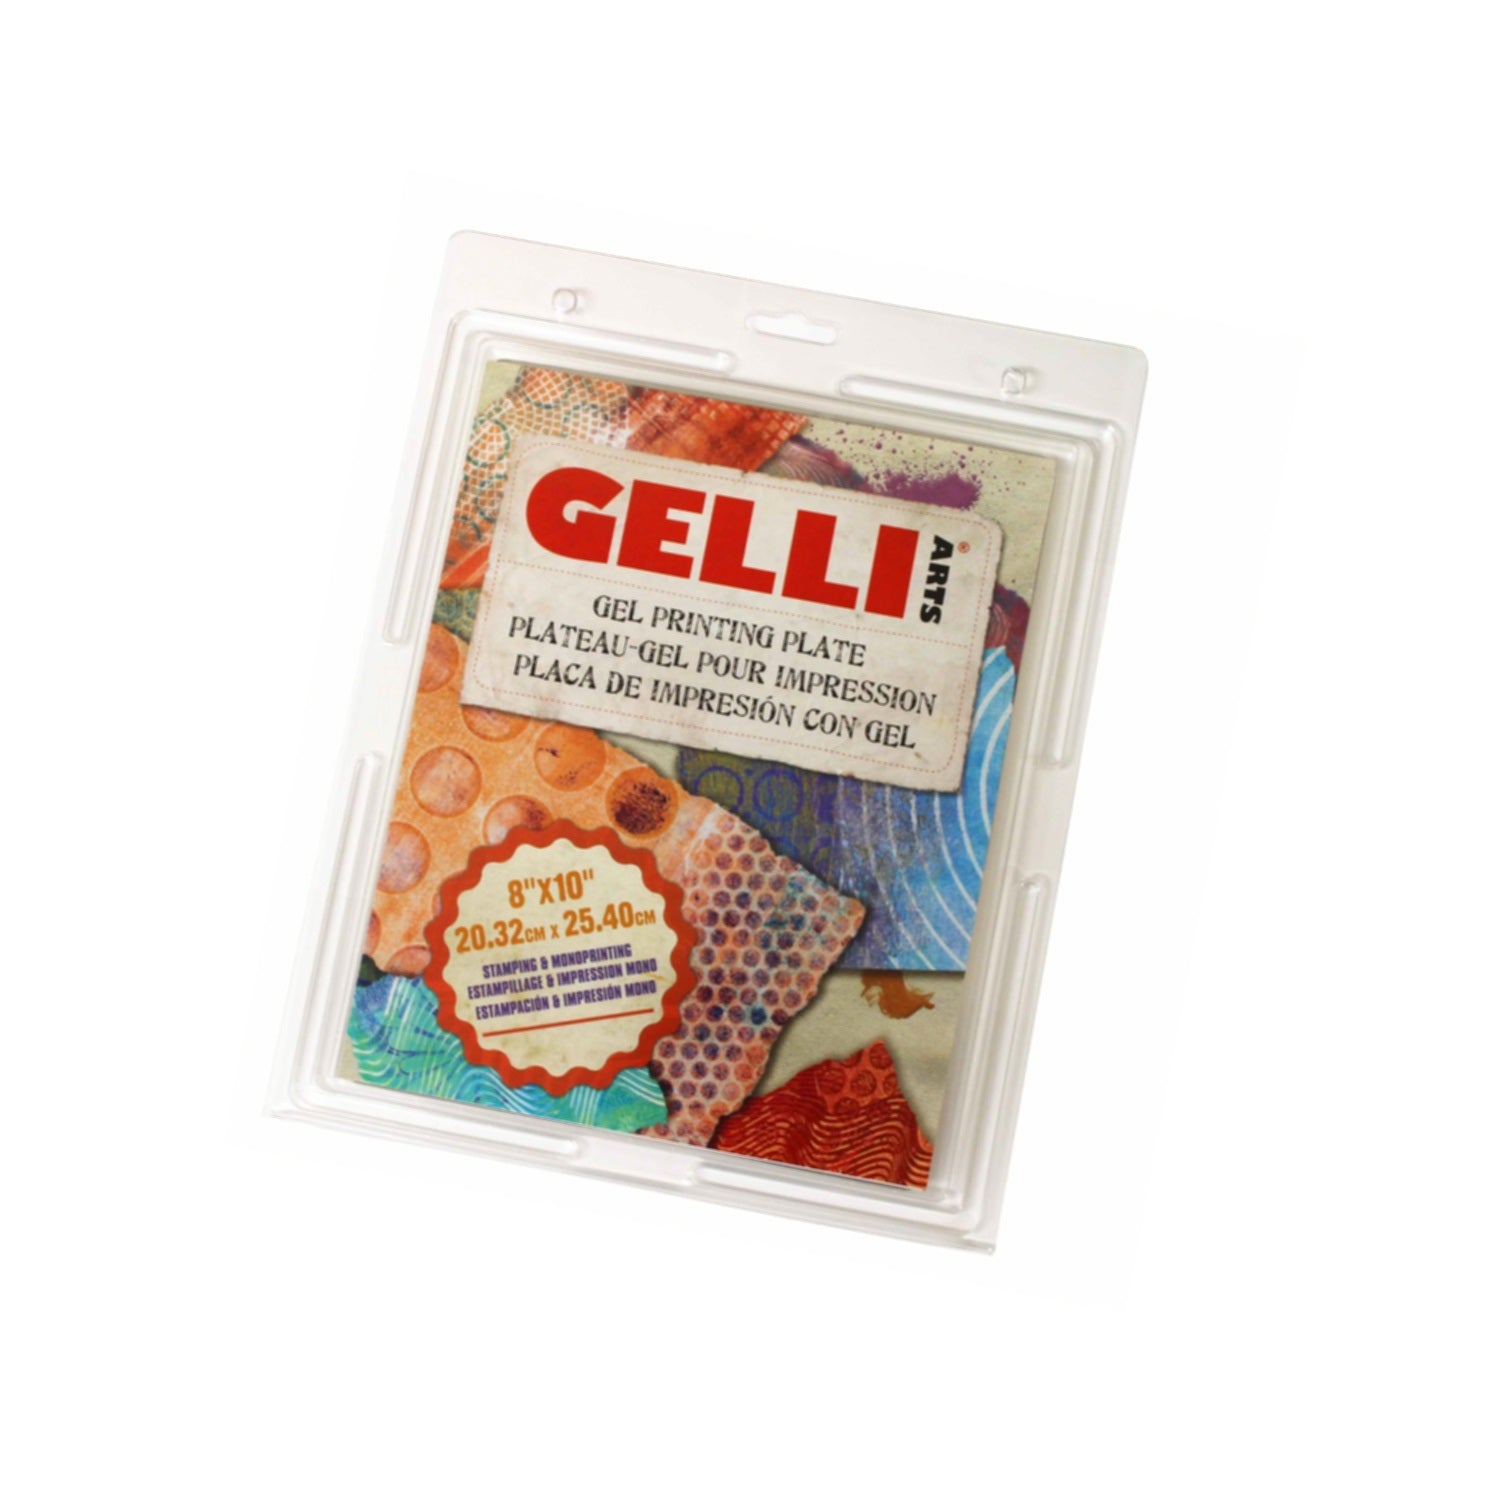  Gelli Arts Gel Printing Plate - 8 X 10 Gel Plate